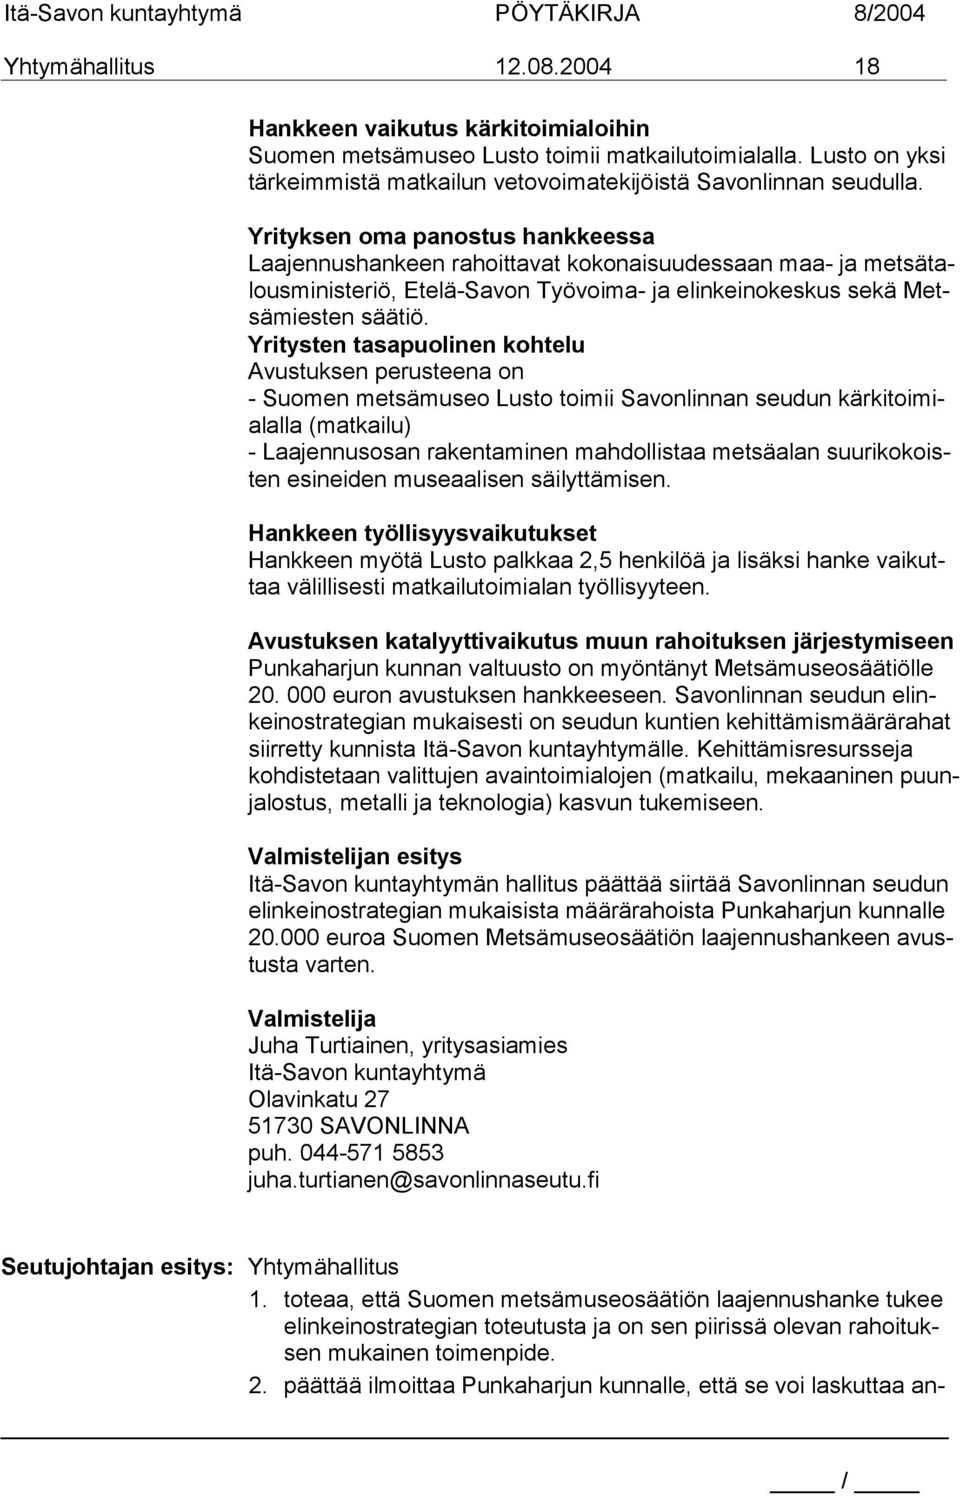 Yritysten tasapuolinen kohtelu Avustuksen perusteena on - Suomen metsämuseo Lusto toimii Savonlinnan seudun kärkitoimialalla (matkailu) - Laajennusosan rakentaminen mahdollistaa metsäalan